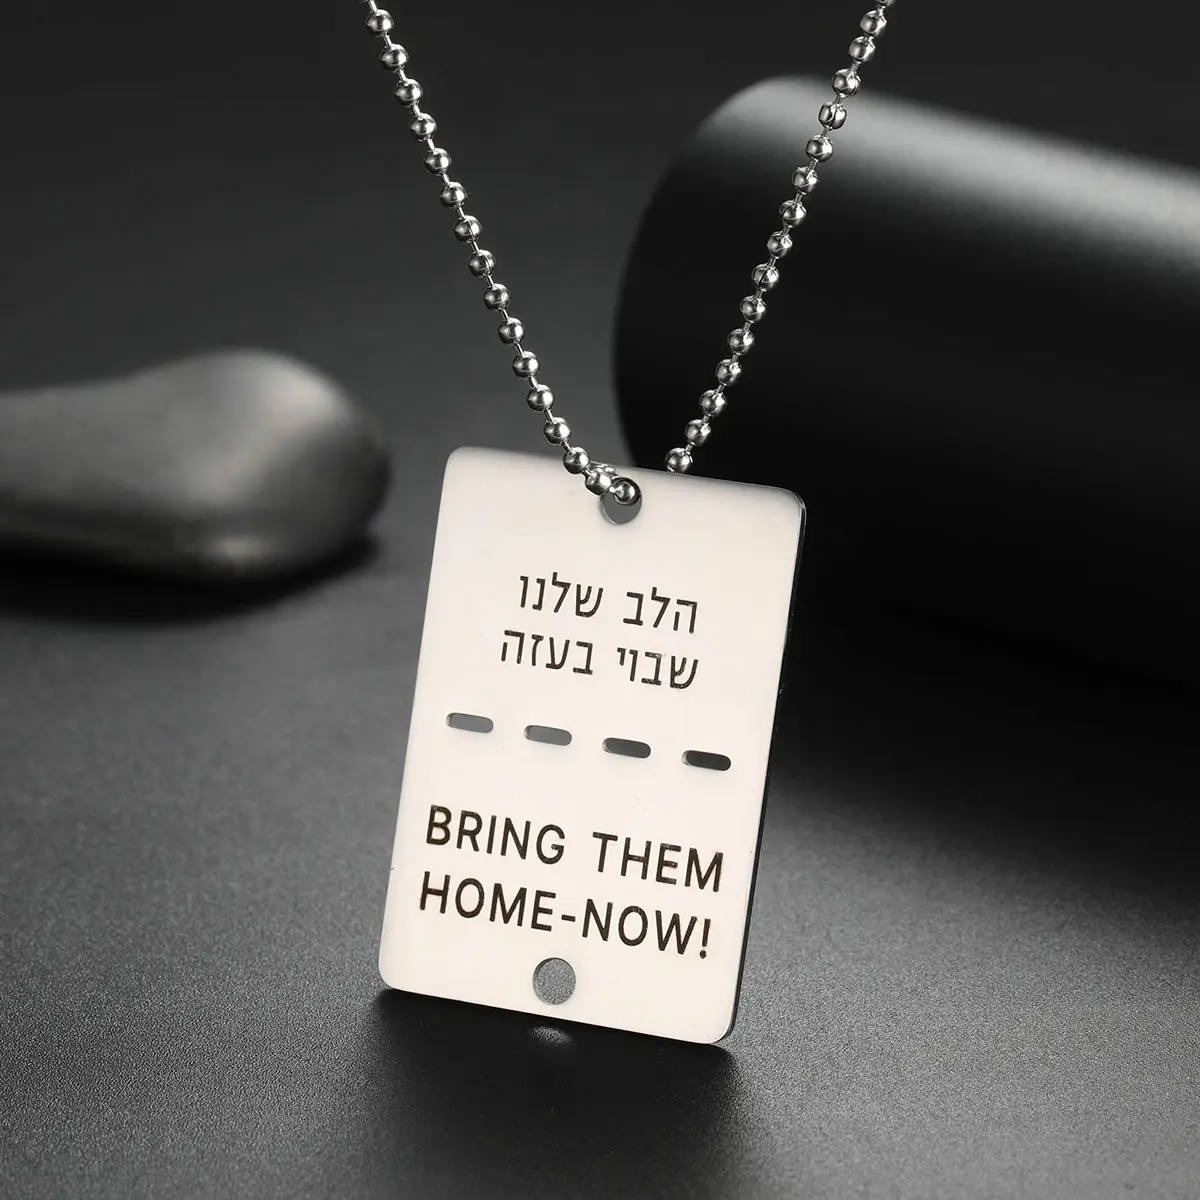 Hochwertiger Edelstahl-Schmuck Bring ihn nach Hause Jetzt Halskette Hundemarke jüdisch hebräisch Israel Halskette Segen Männer Junge Schmuck